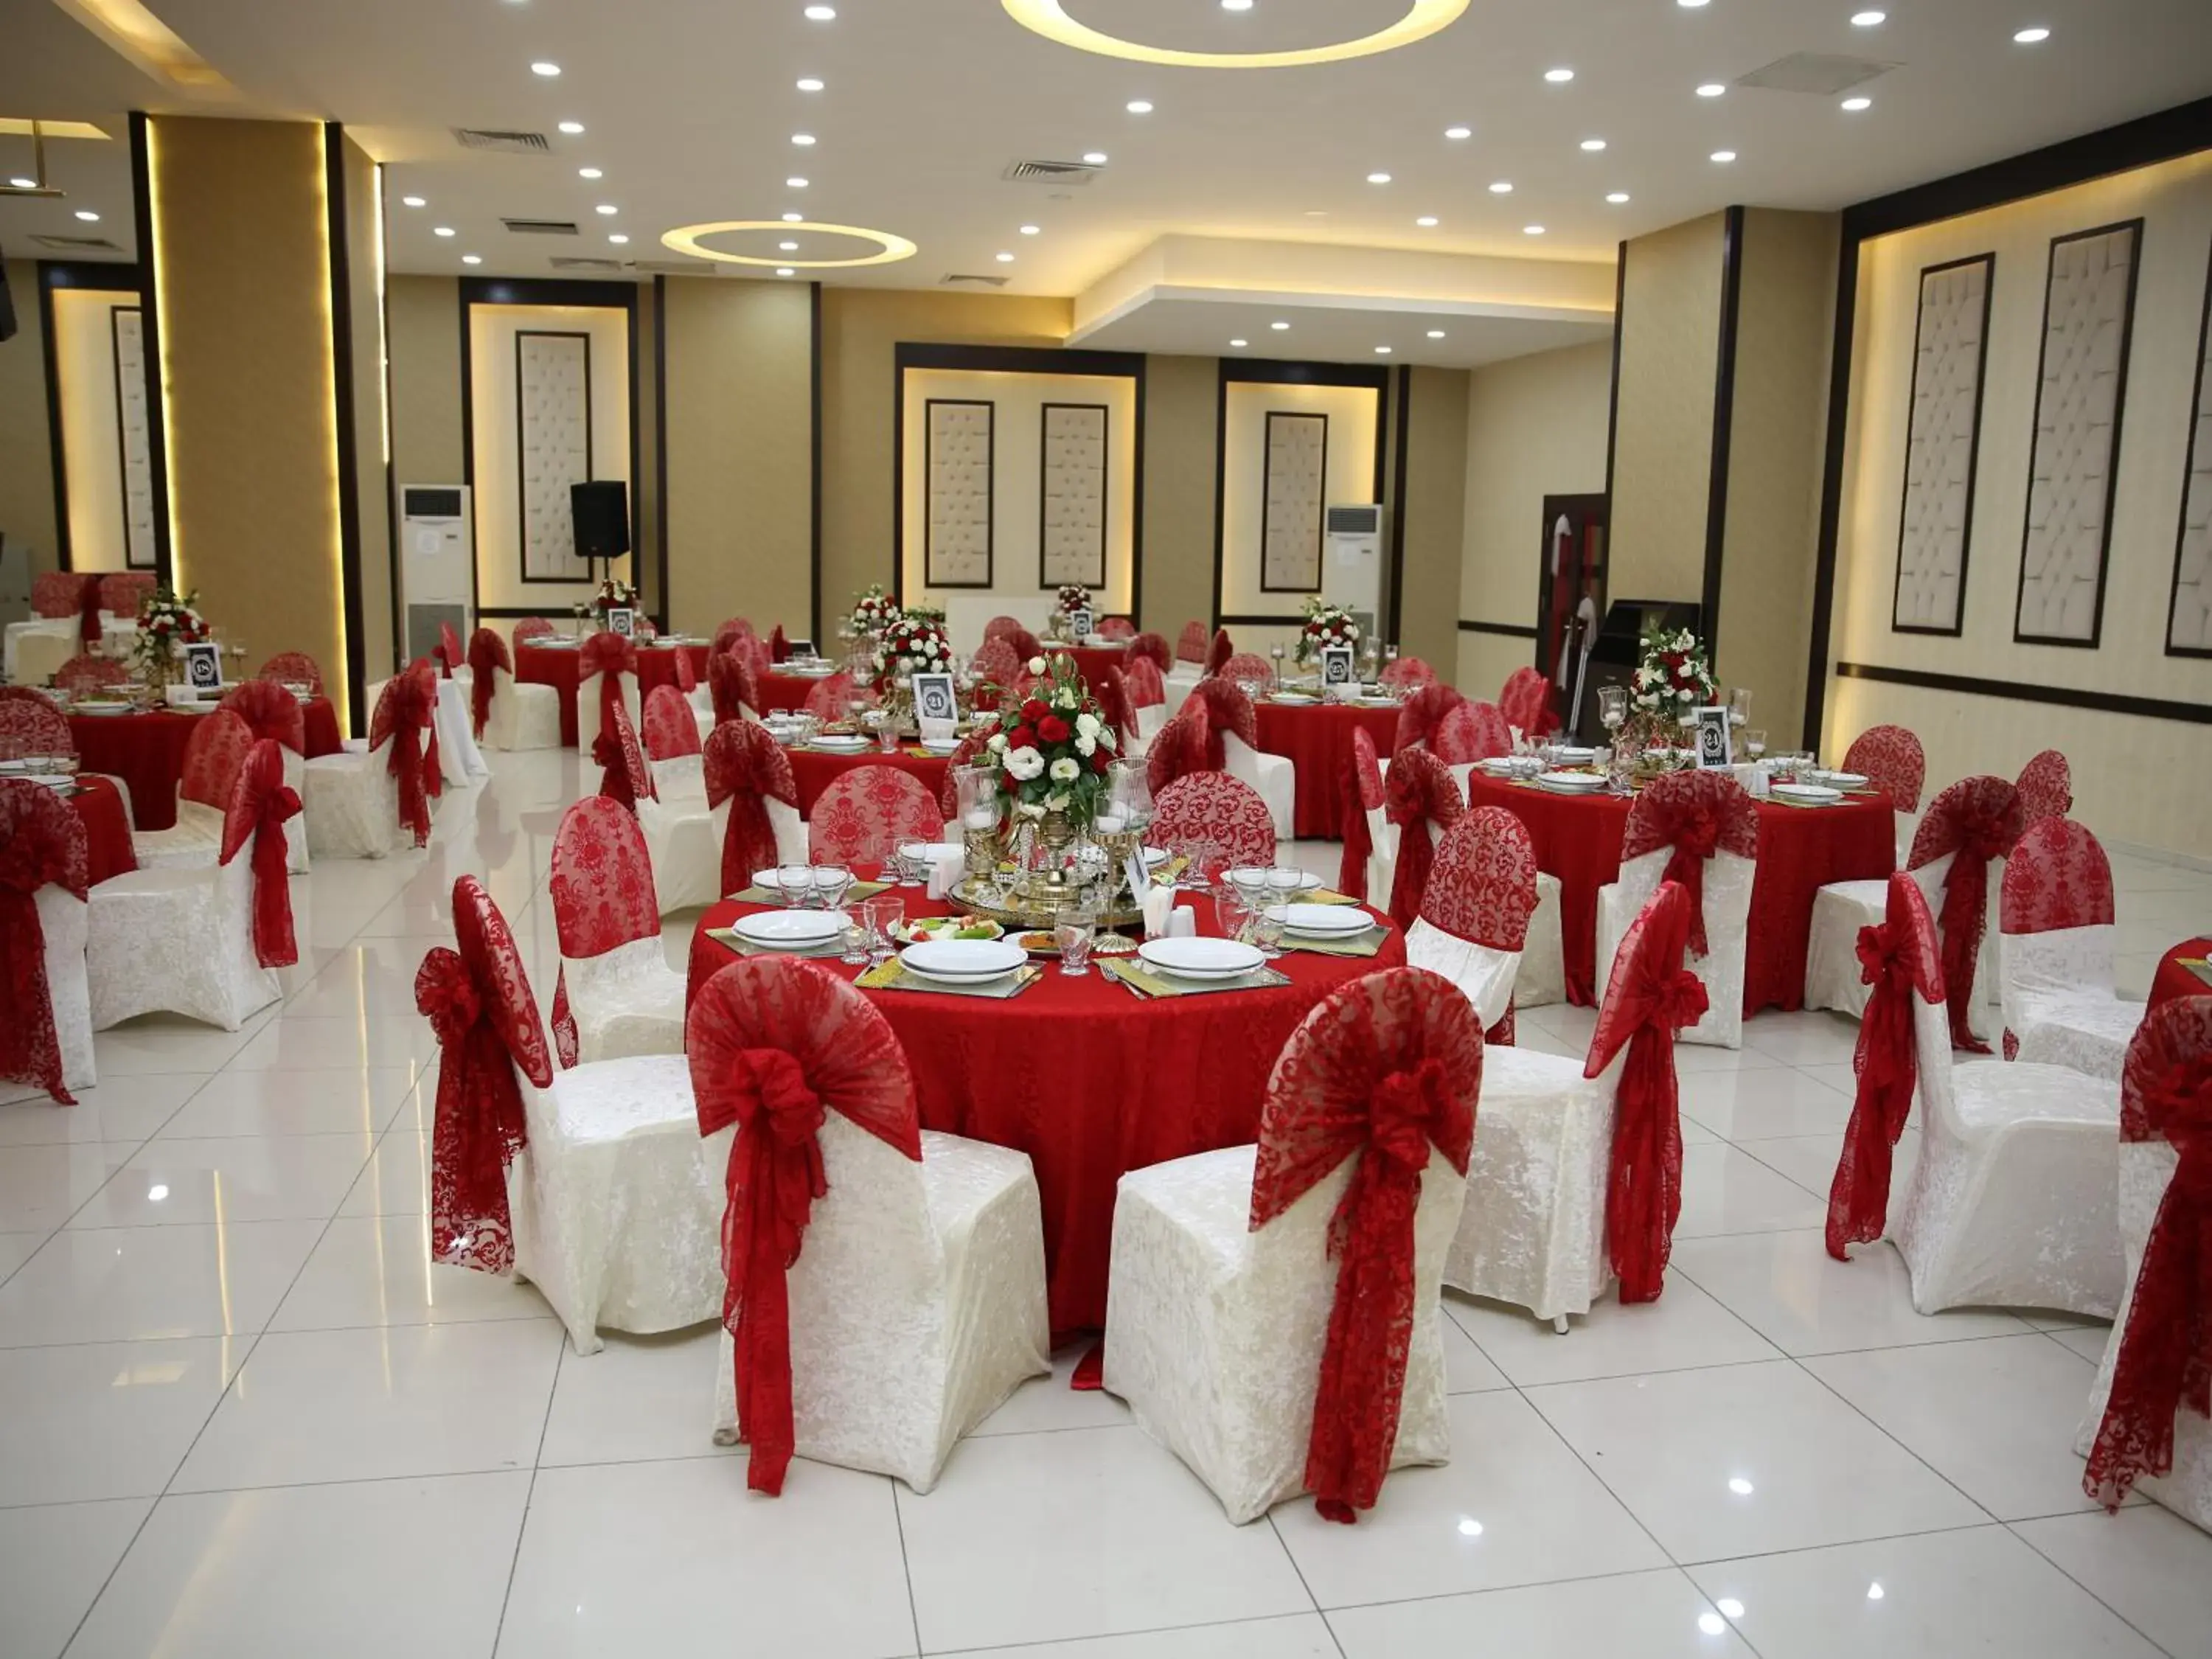 Banquet/Function facilities, Banquet Facilities in Buyuk Velic Hotel